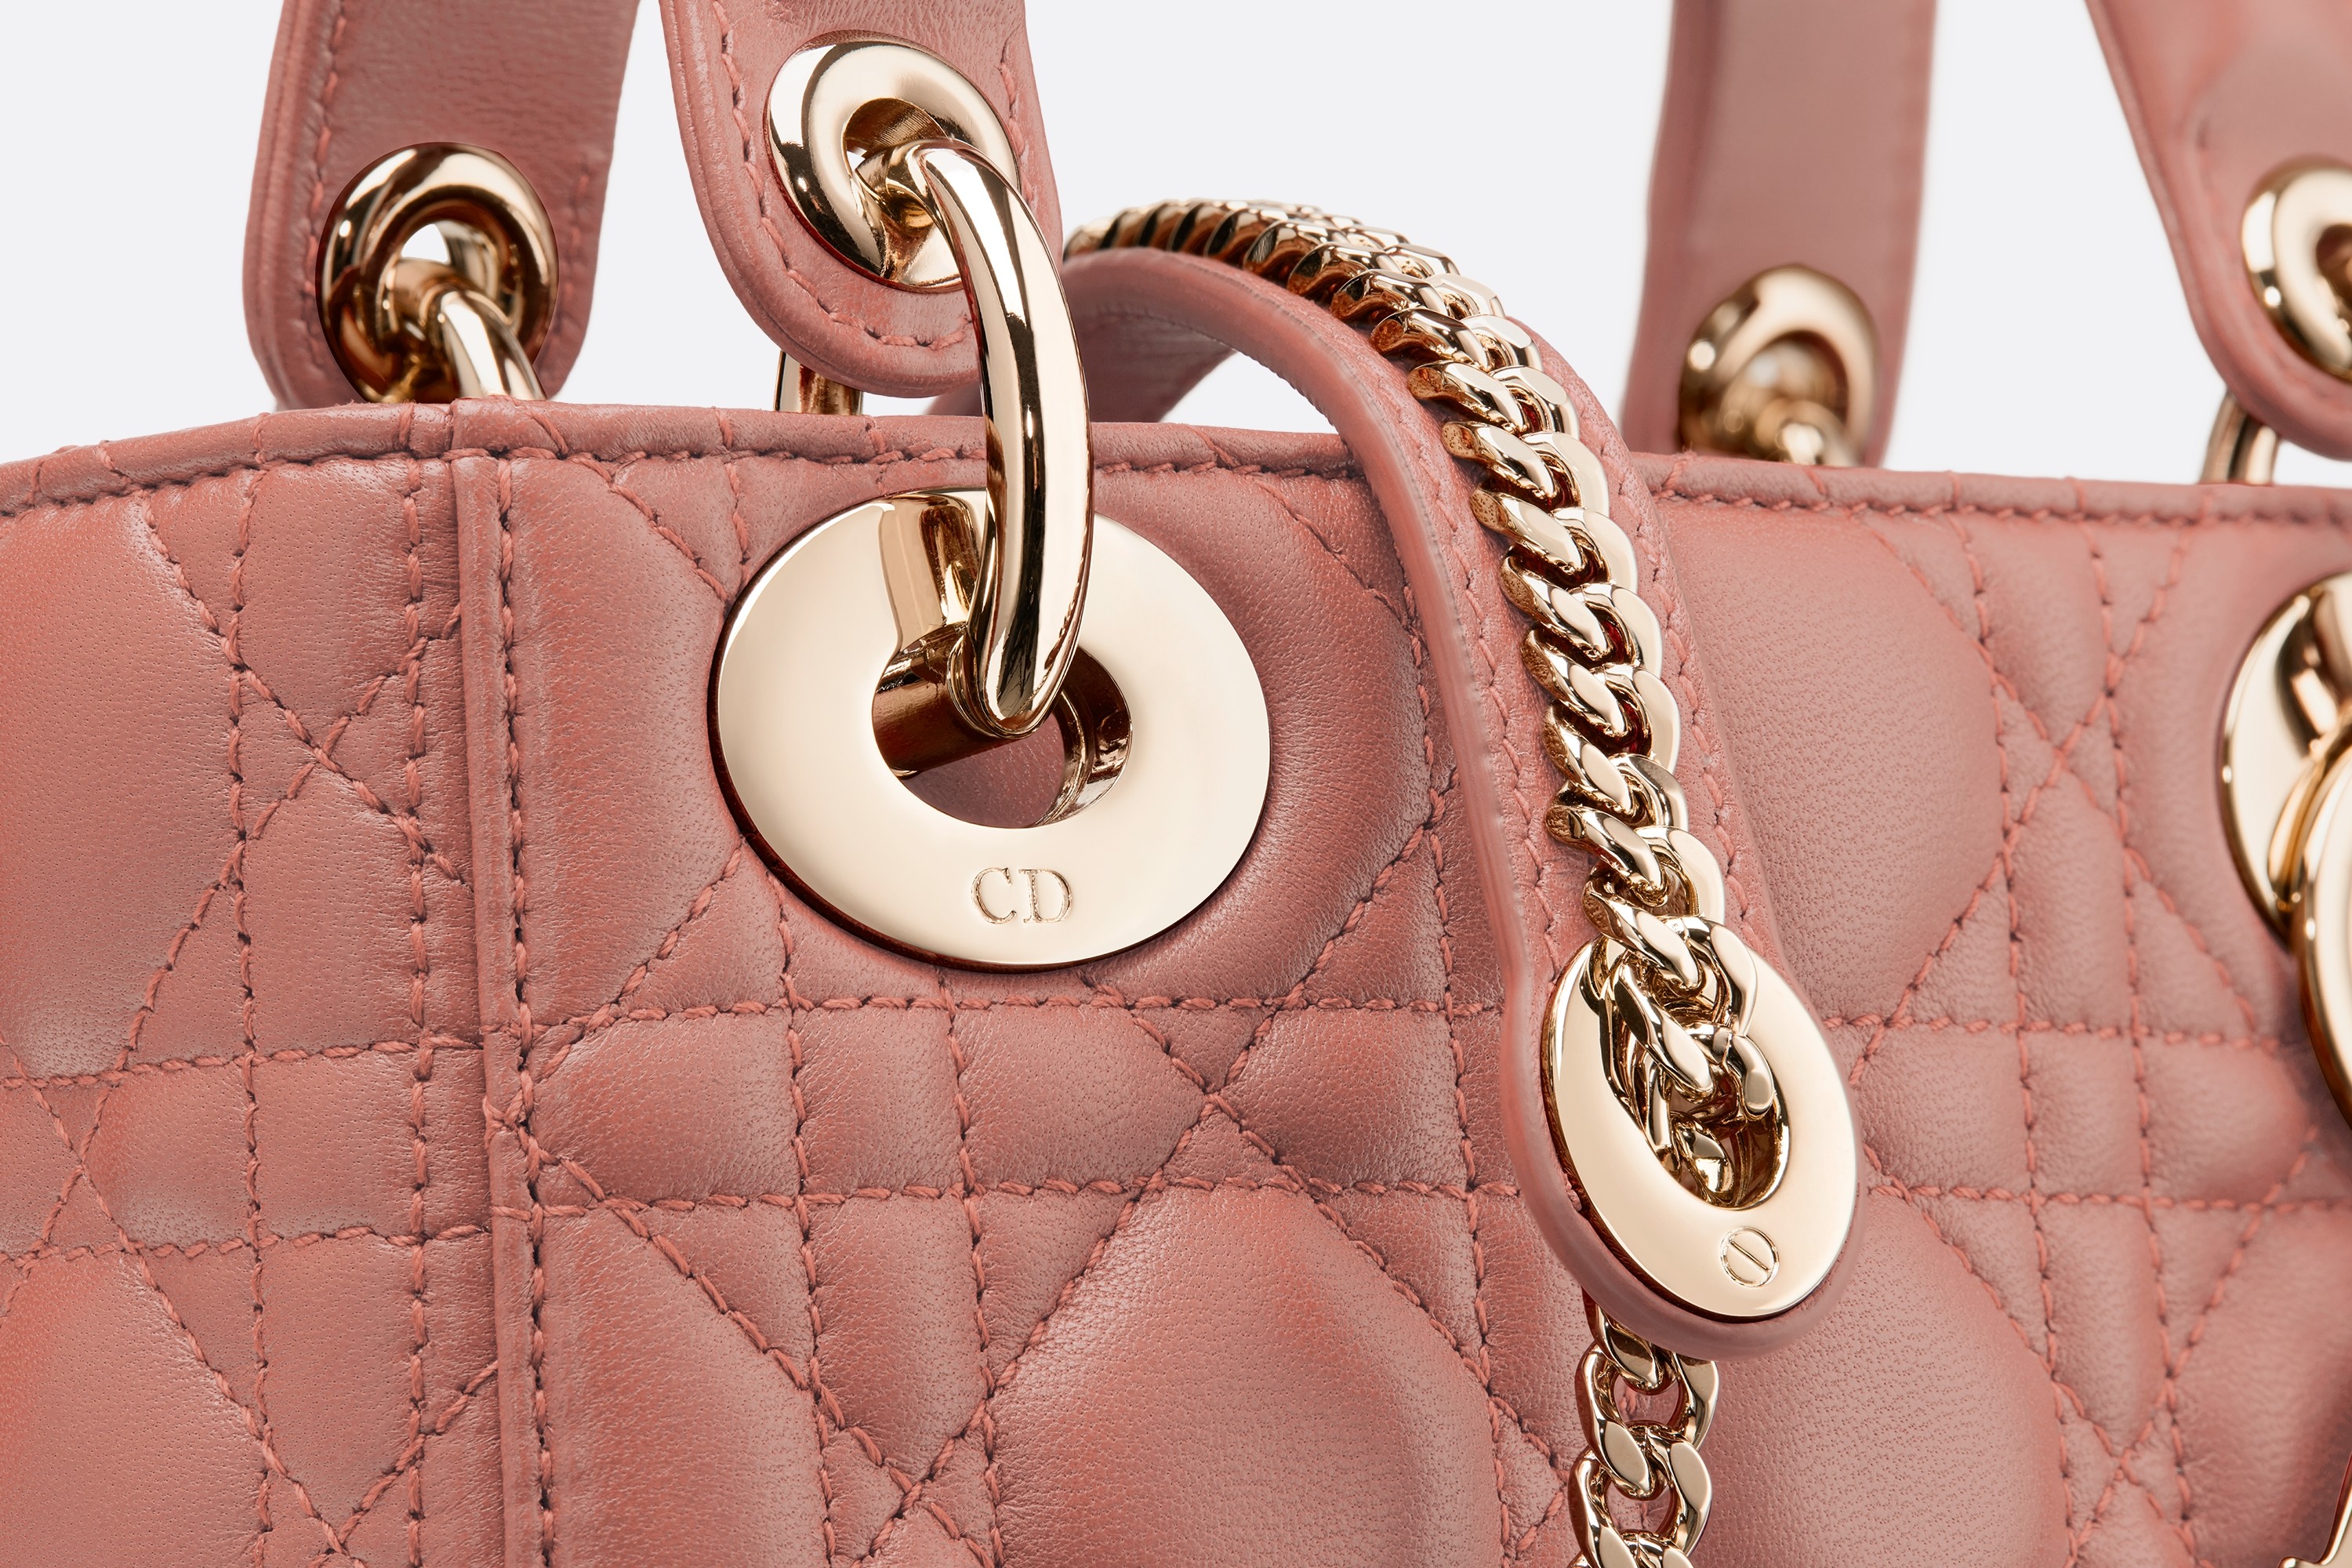 dior包包官网价格 迪奥Lady Dior榛果粉红色藤格纹小羊皮袖珍手提包